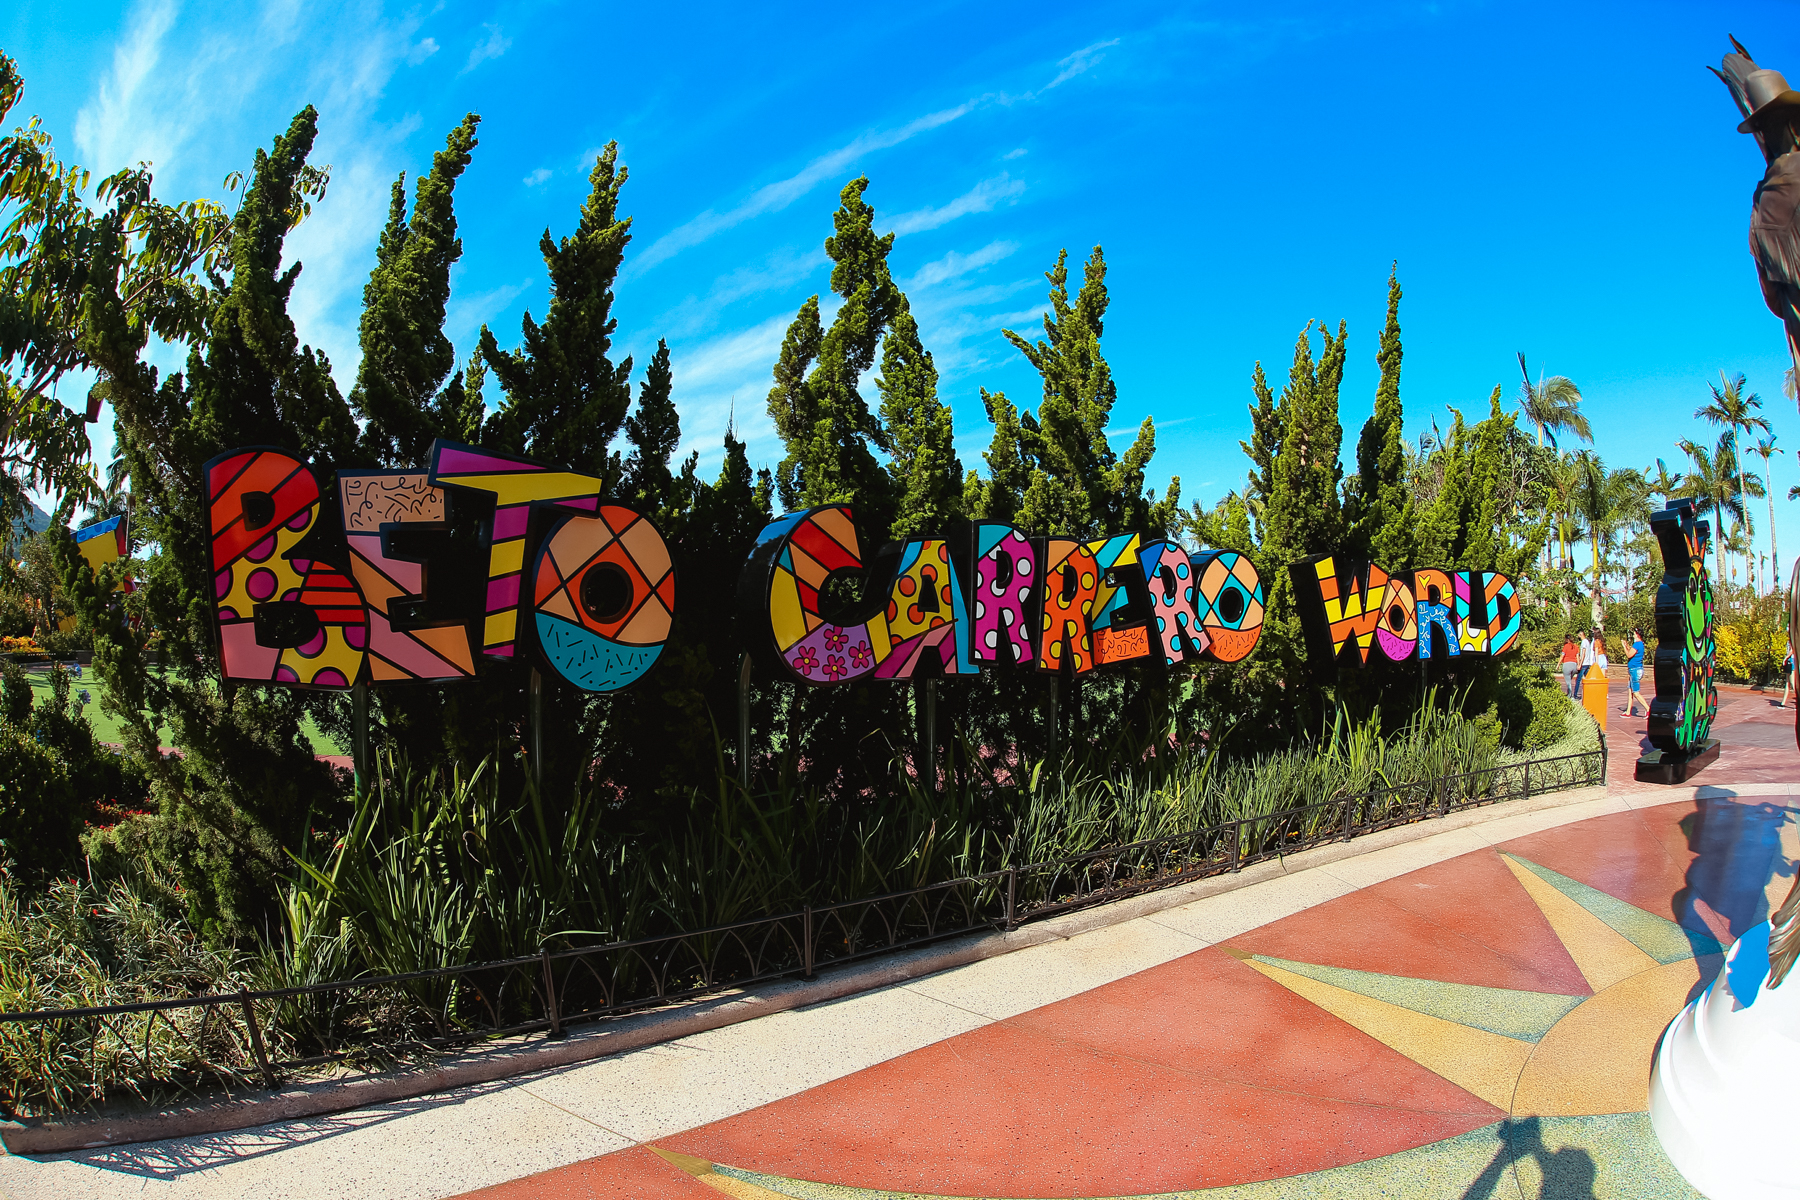 Beto Carrero World dá início às comemorações dos 30 anos